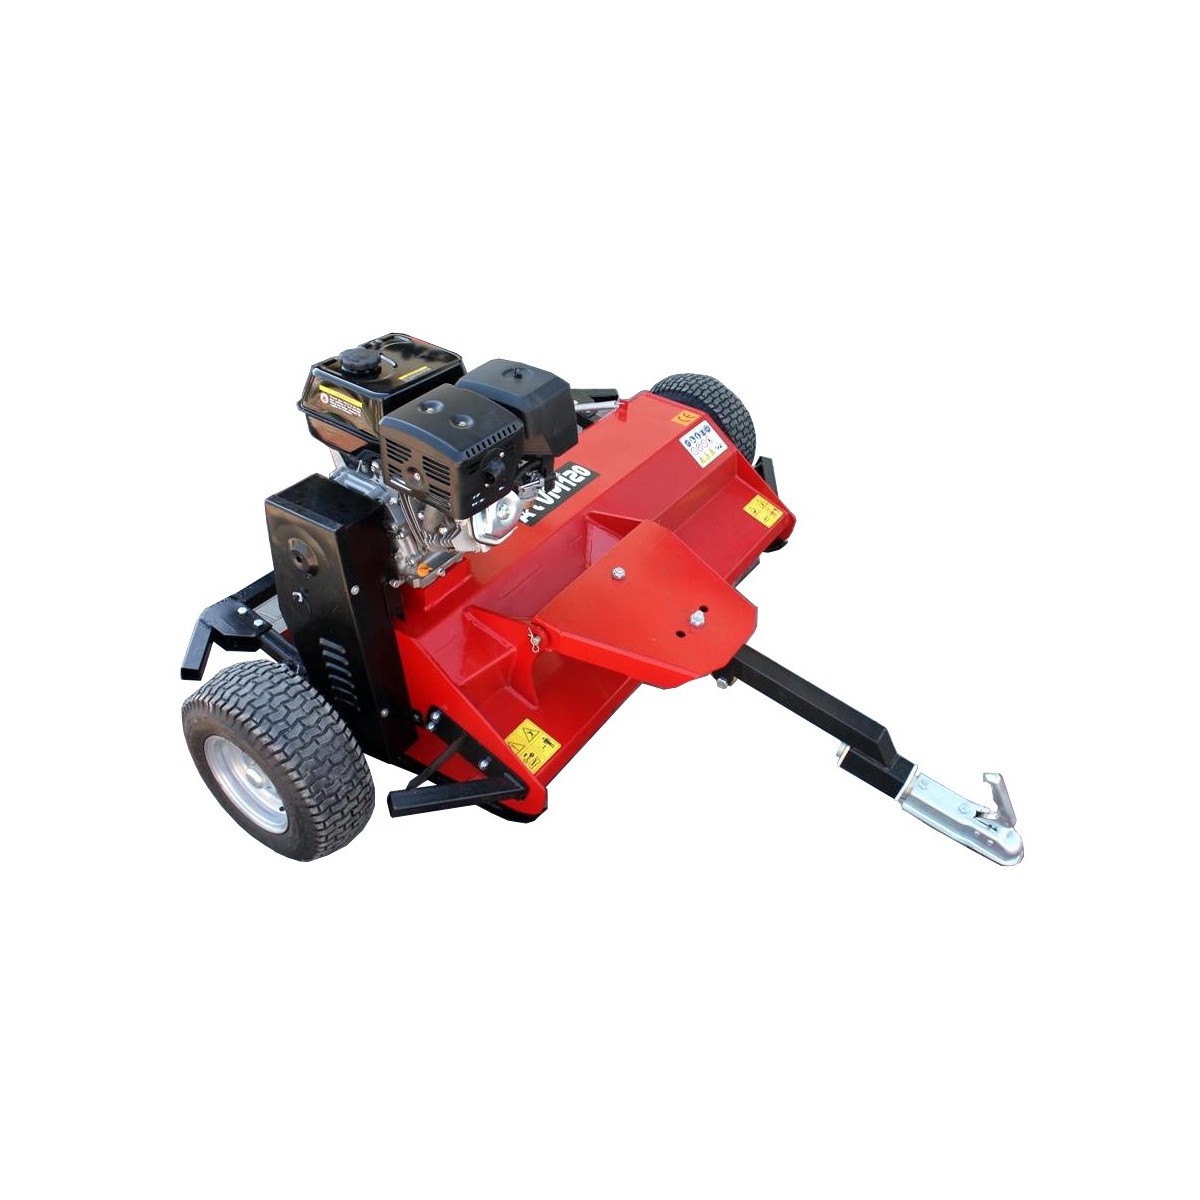 Flail mower ATVE 120, for ATV QUAD - Loncin engine